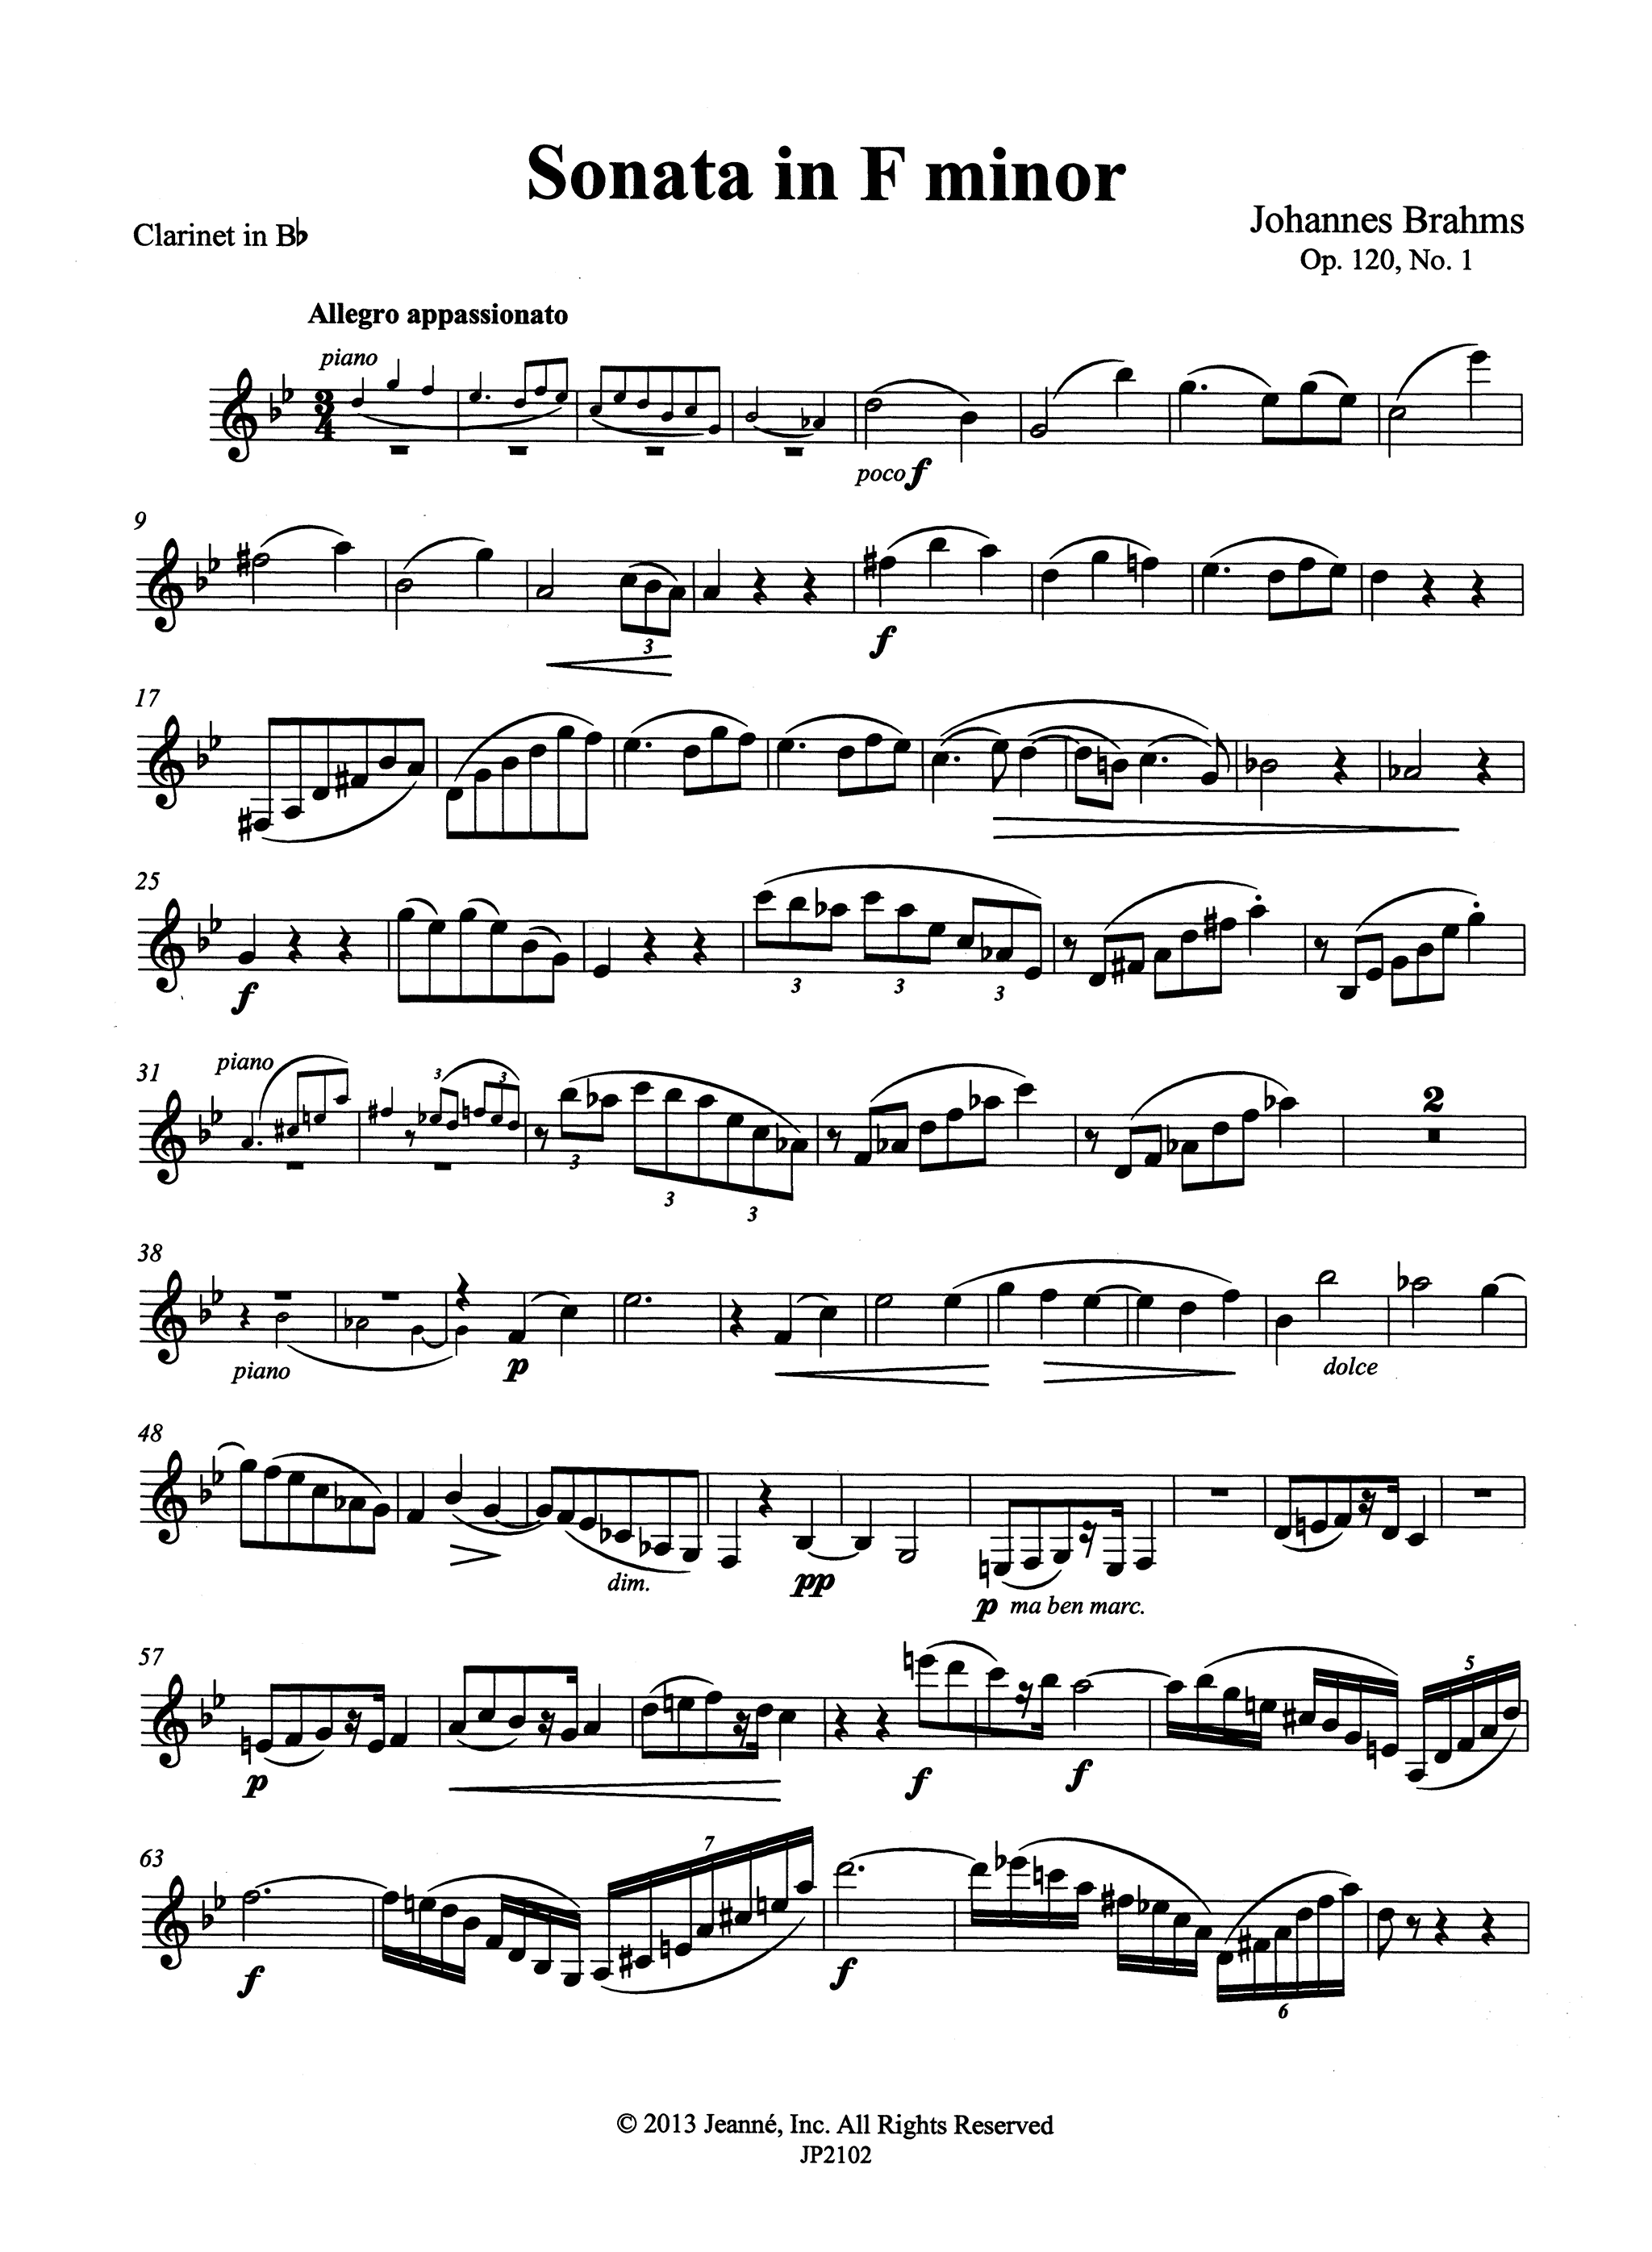 Brahms Sonata in F Minor, Op. 120 No. 1 Clarinet part